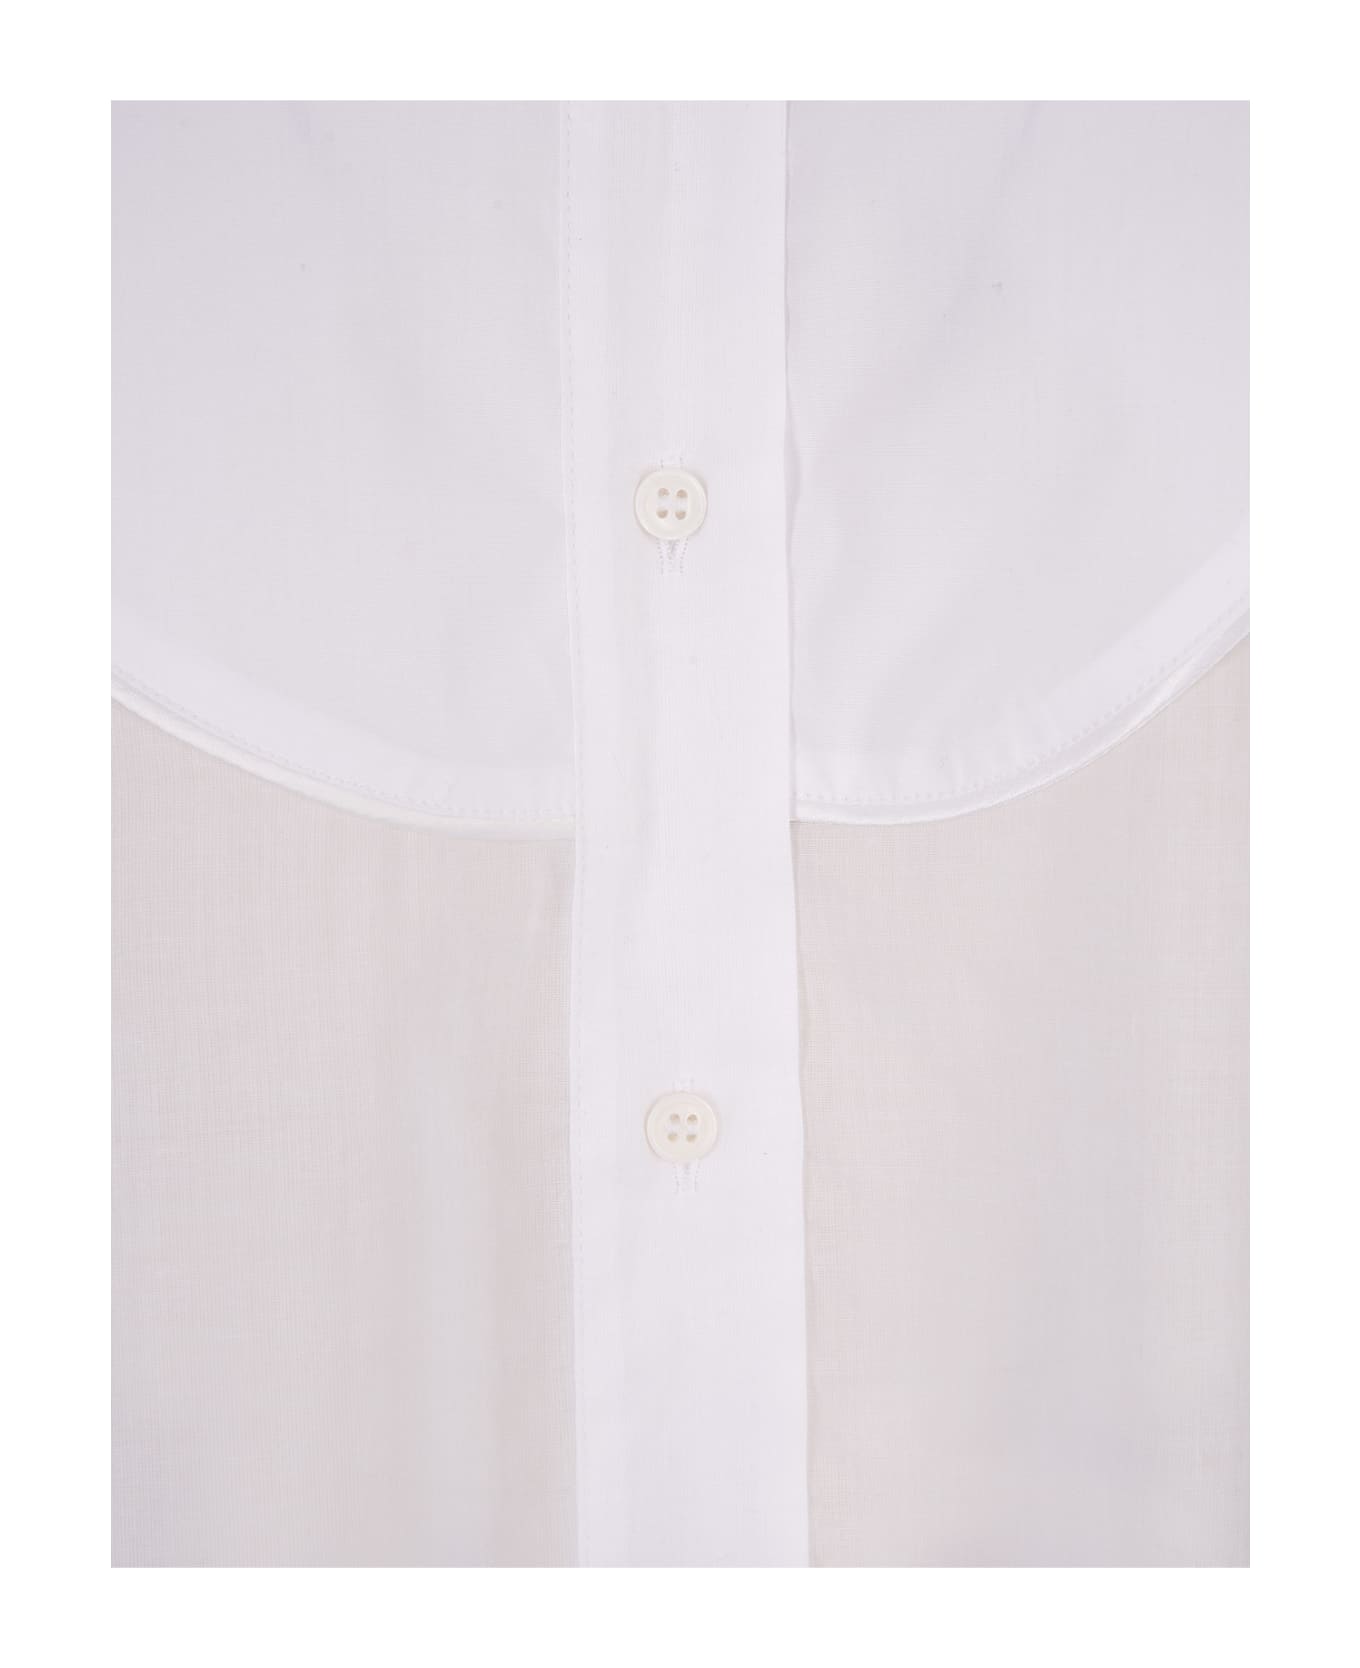 Ermanno Scervino White Oversize Shirt - Bianco